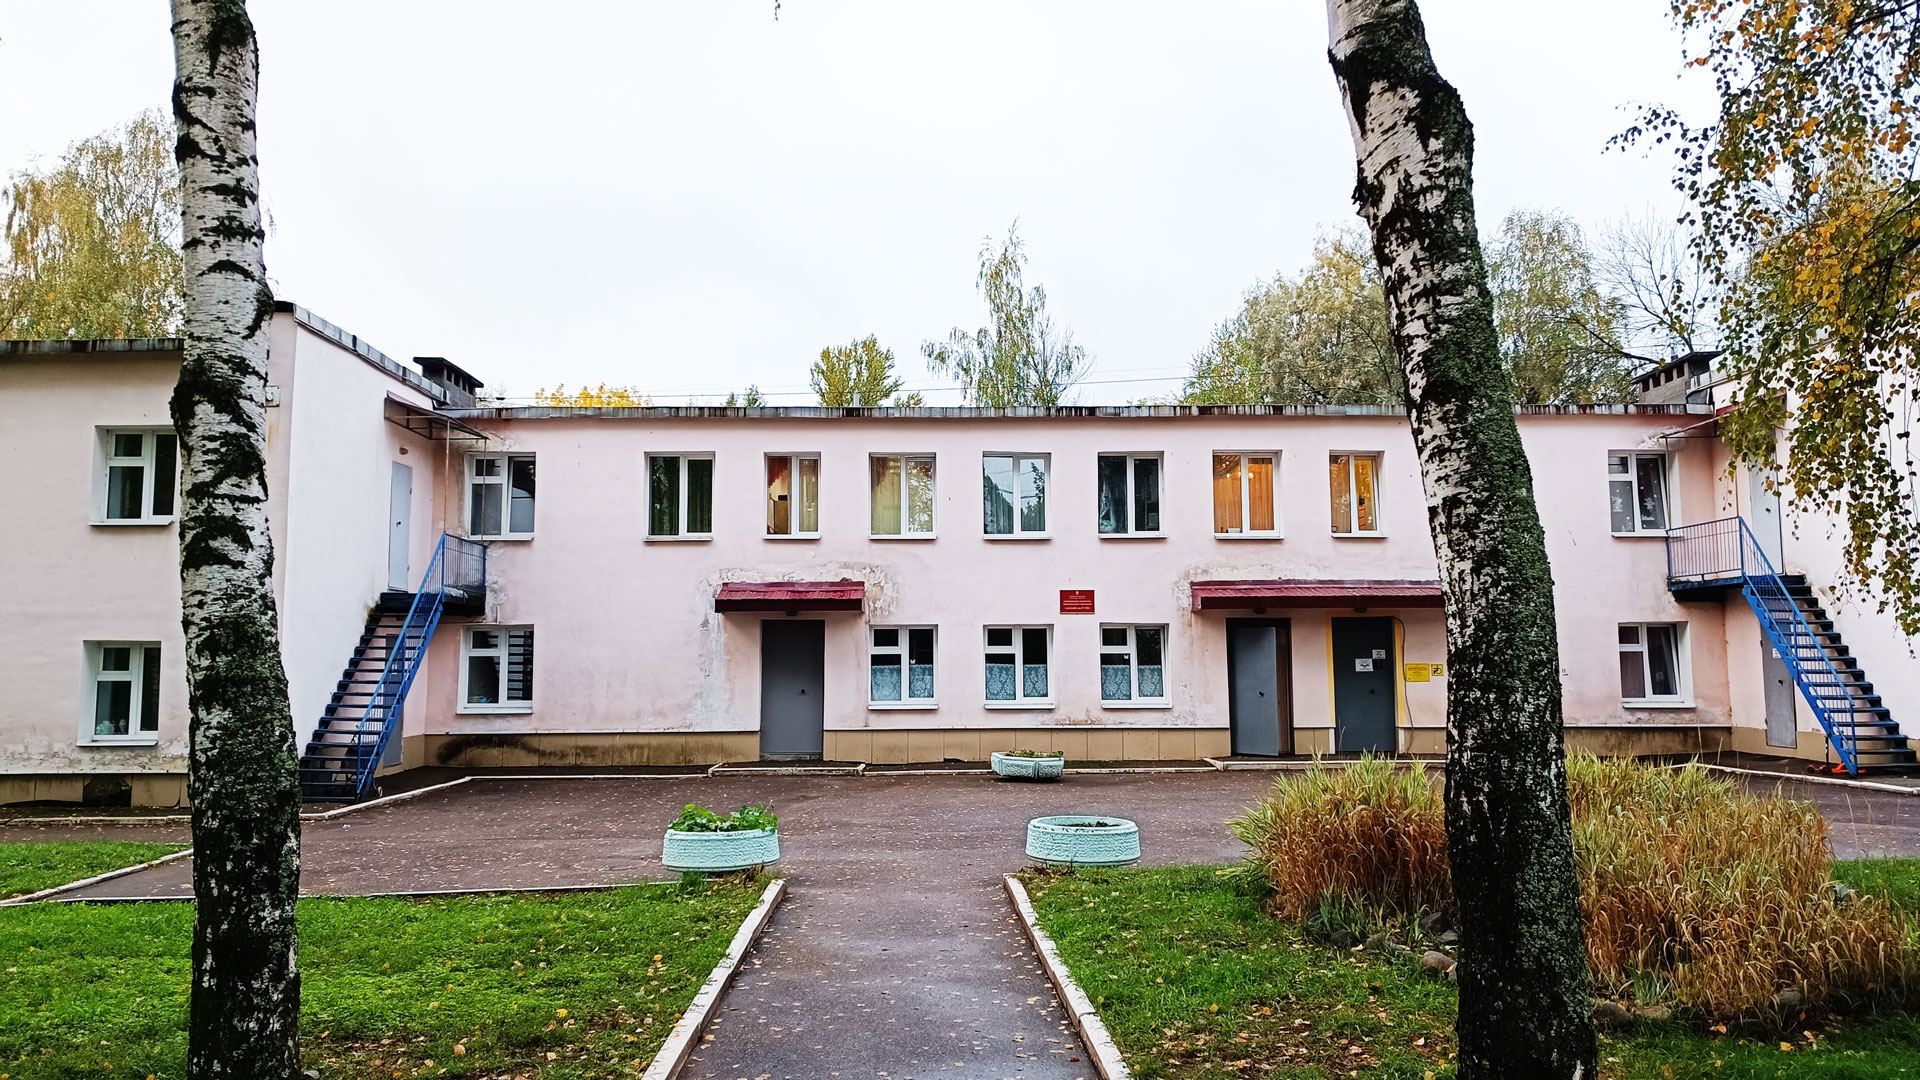 Детский сад 158 Ярославль: общий вид здания.